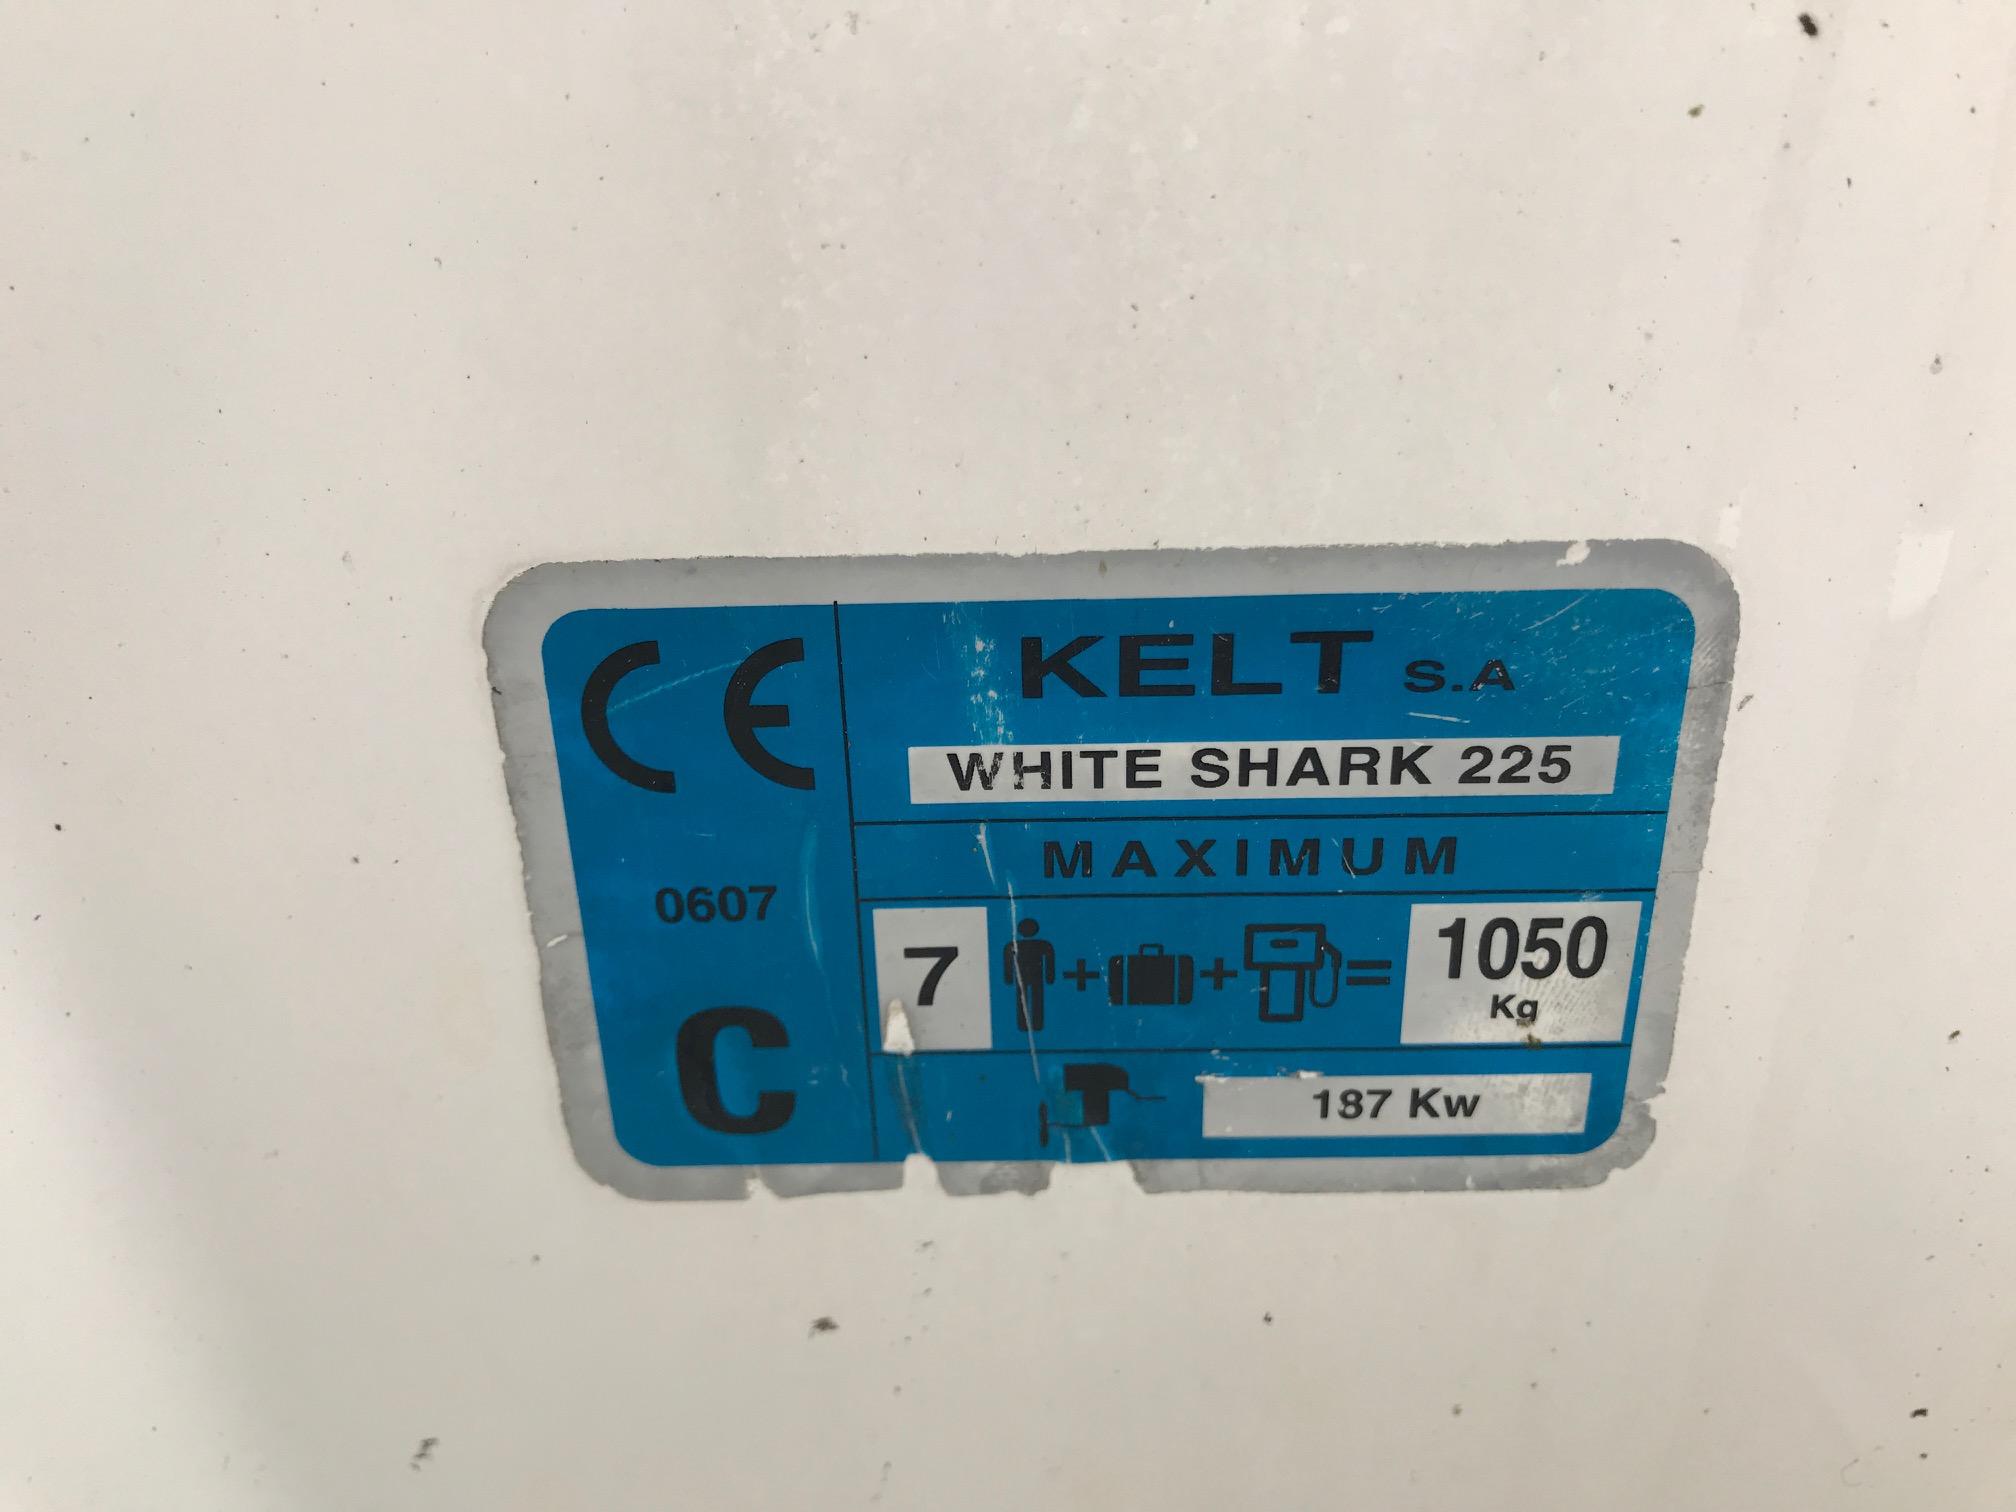 White Shark 225